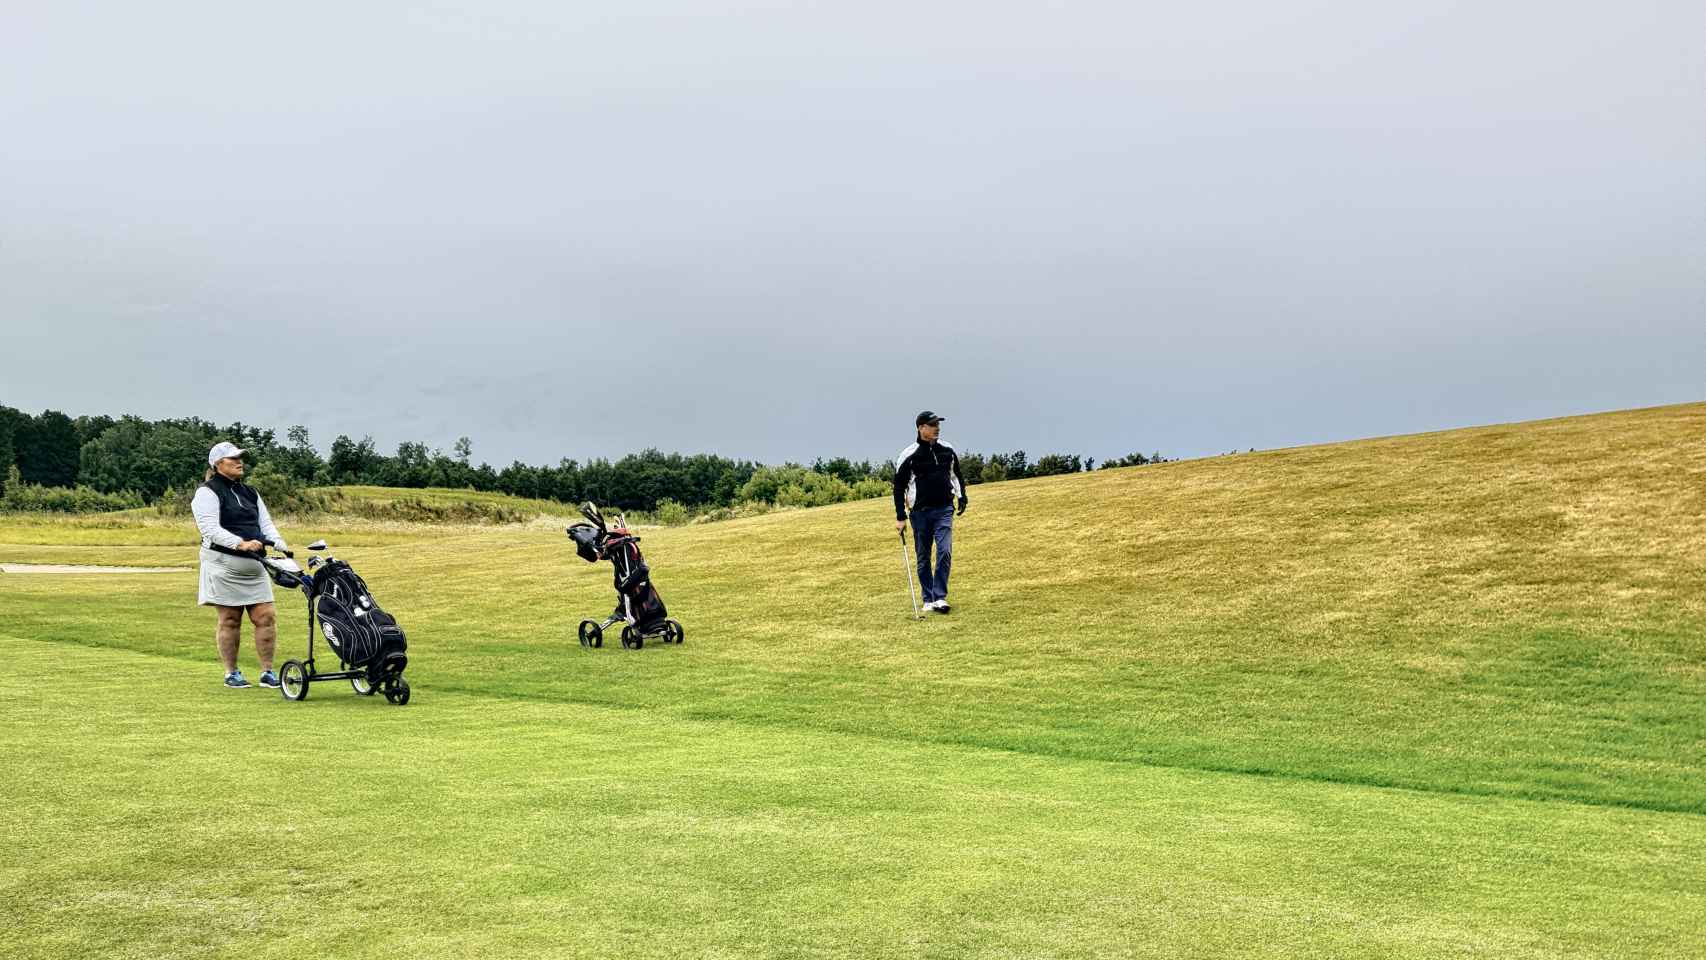 Varias personas practican el deporte del golf.